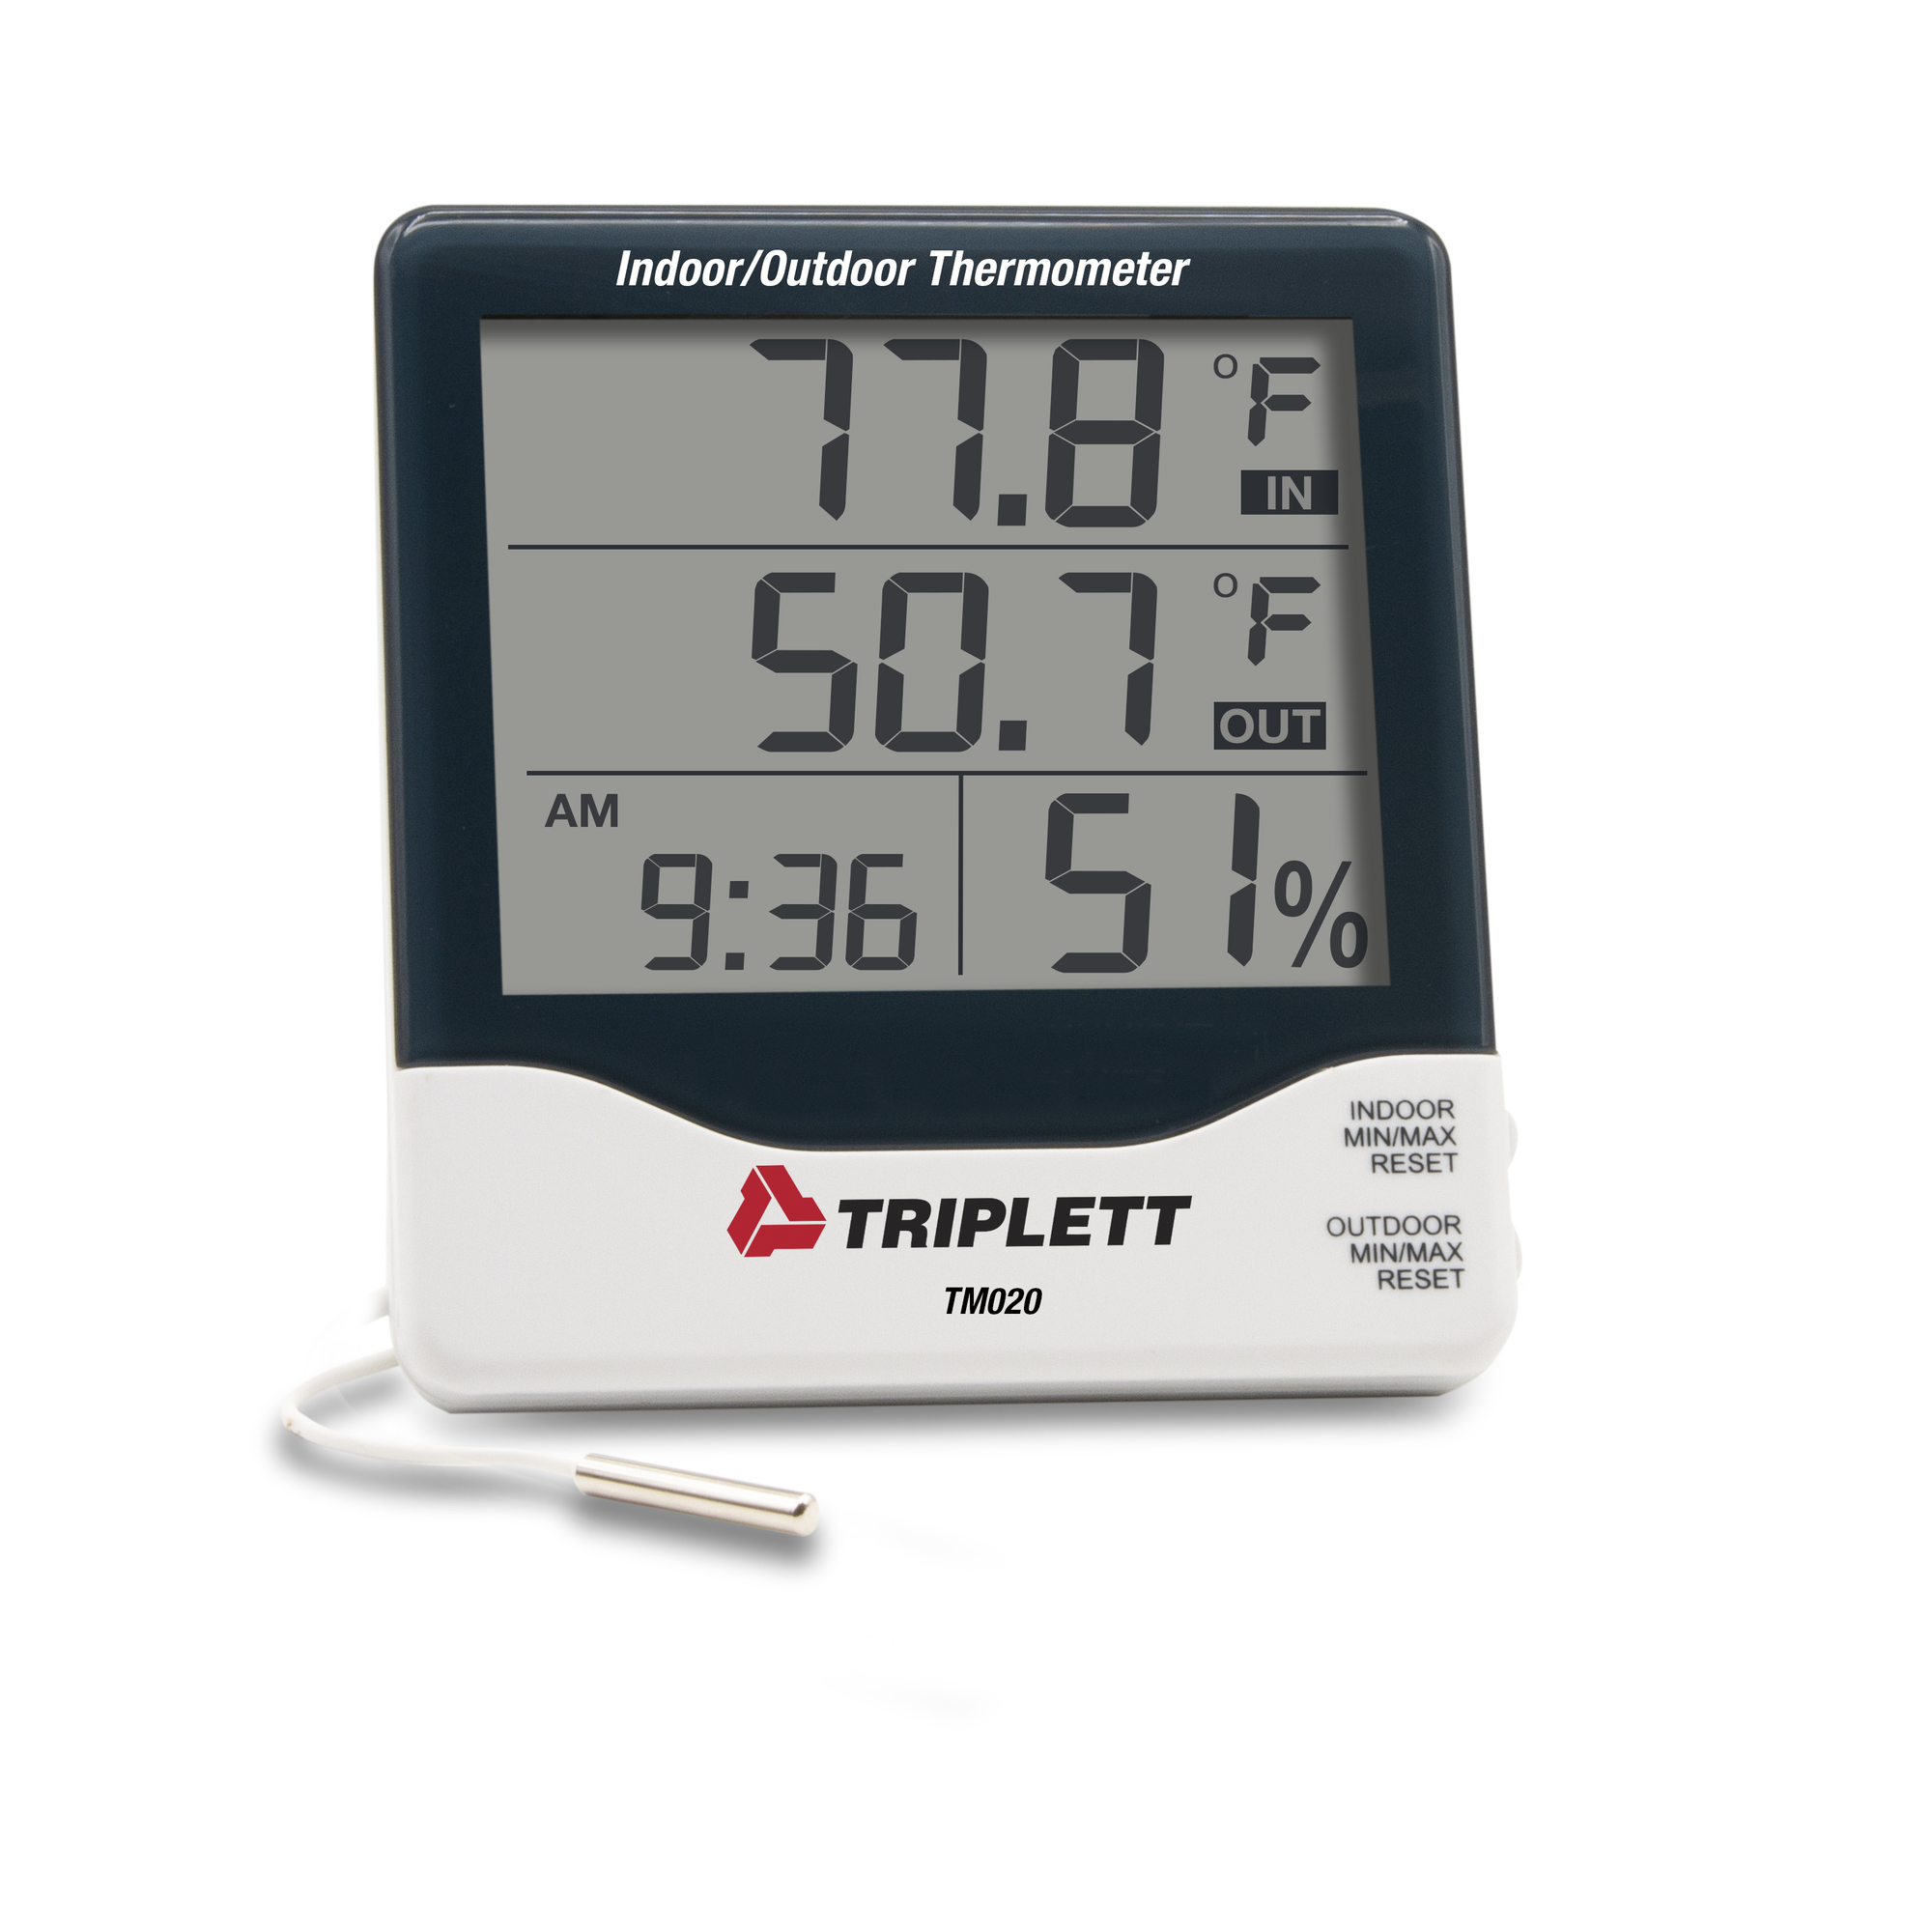 Triplett, Indoor/Outdoor Thermometer, Model TM020